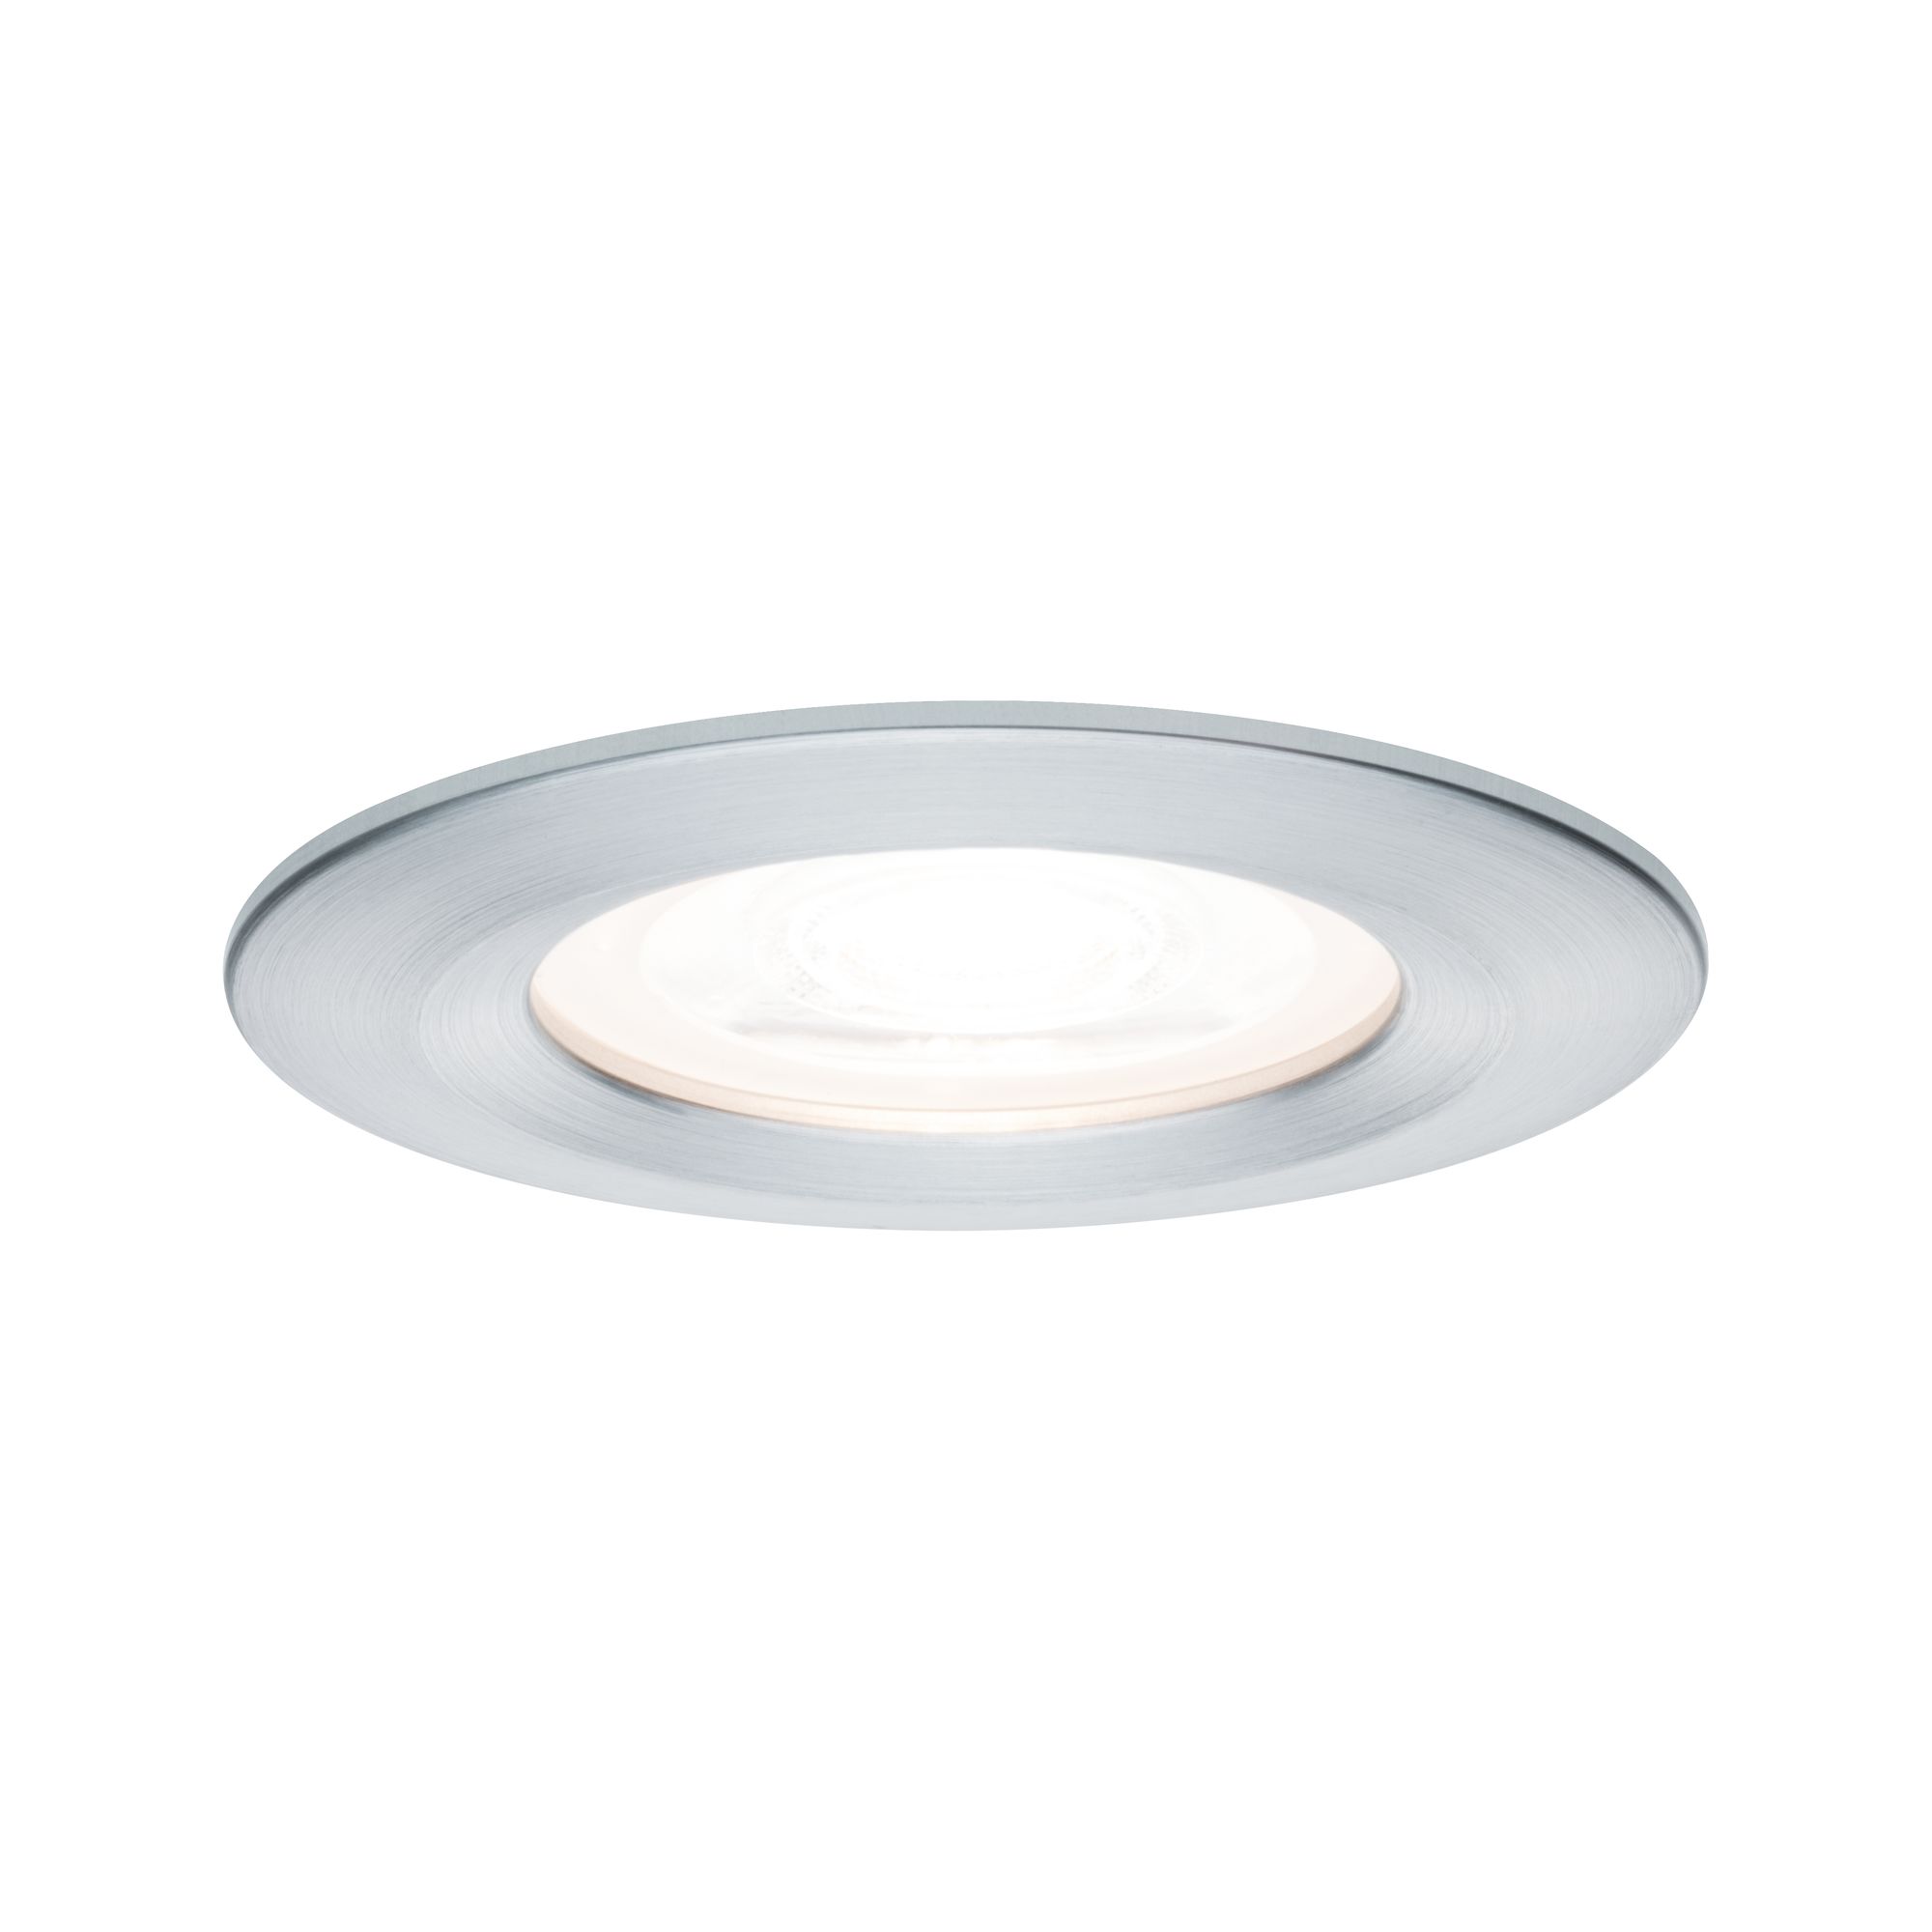 PAULMANN - Vestavné svítidlo LED Nova kruhové 1x6,5W GU10 hliník broušený nevýklopné 3-krokové-stmívatelné, P 93479